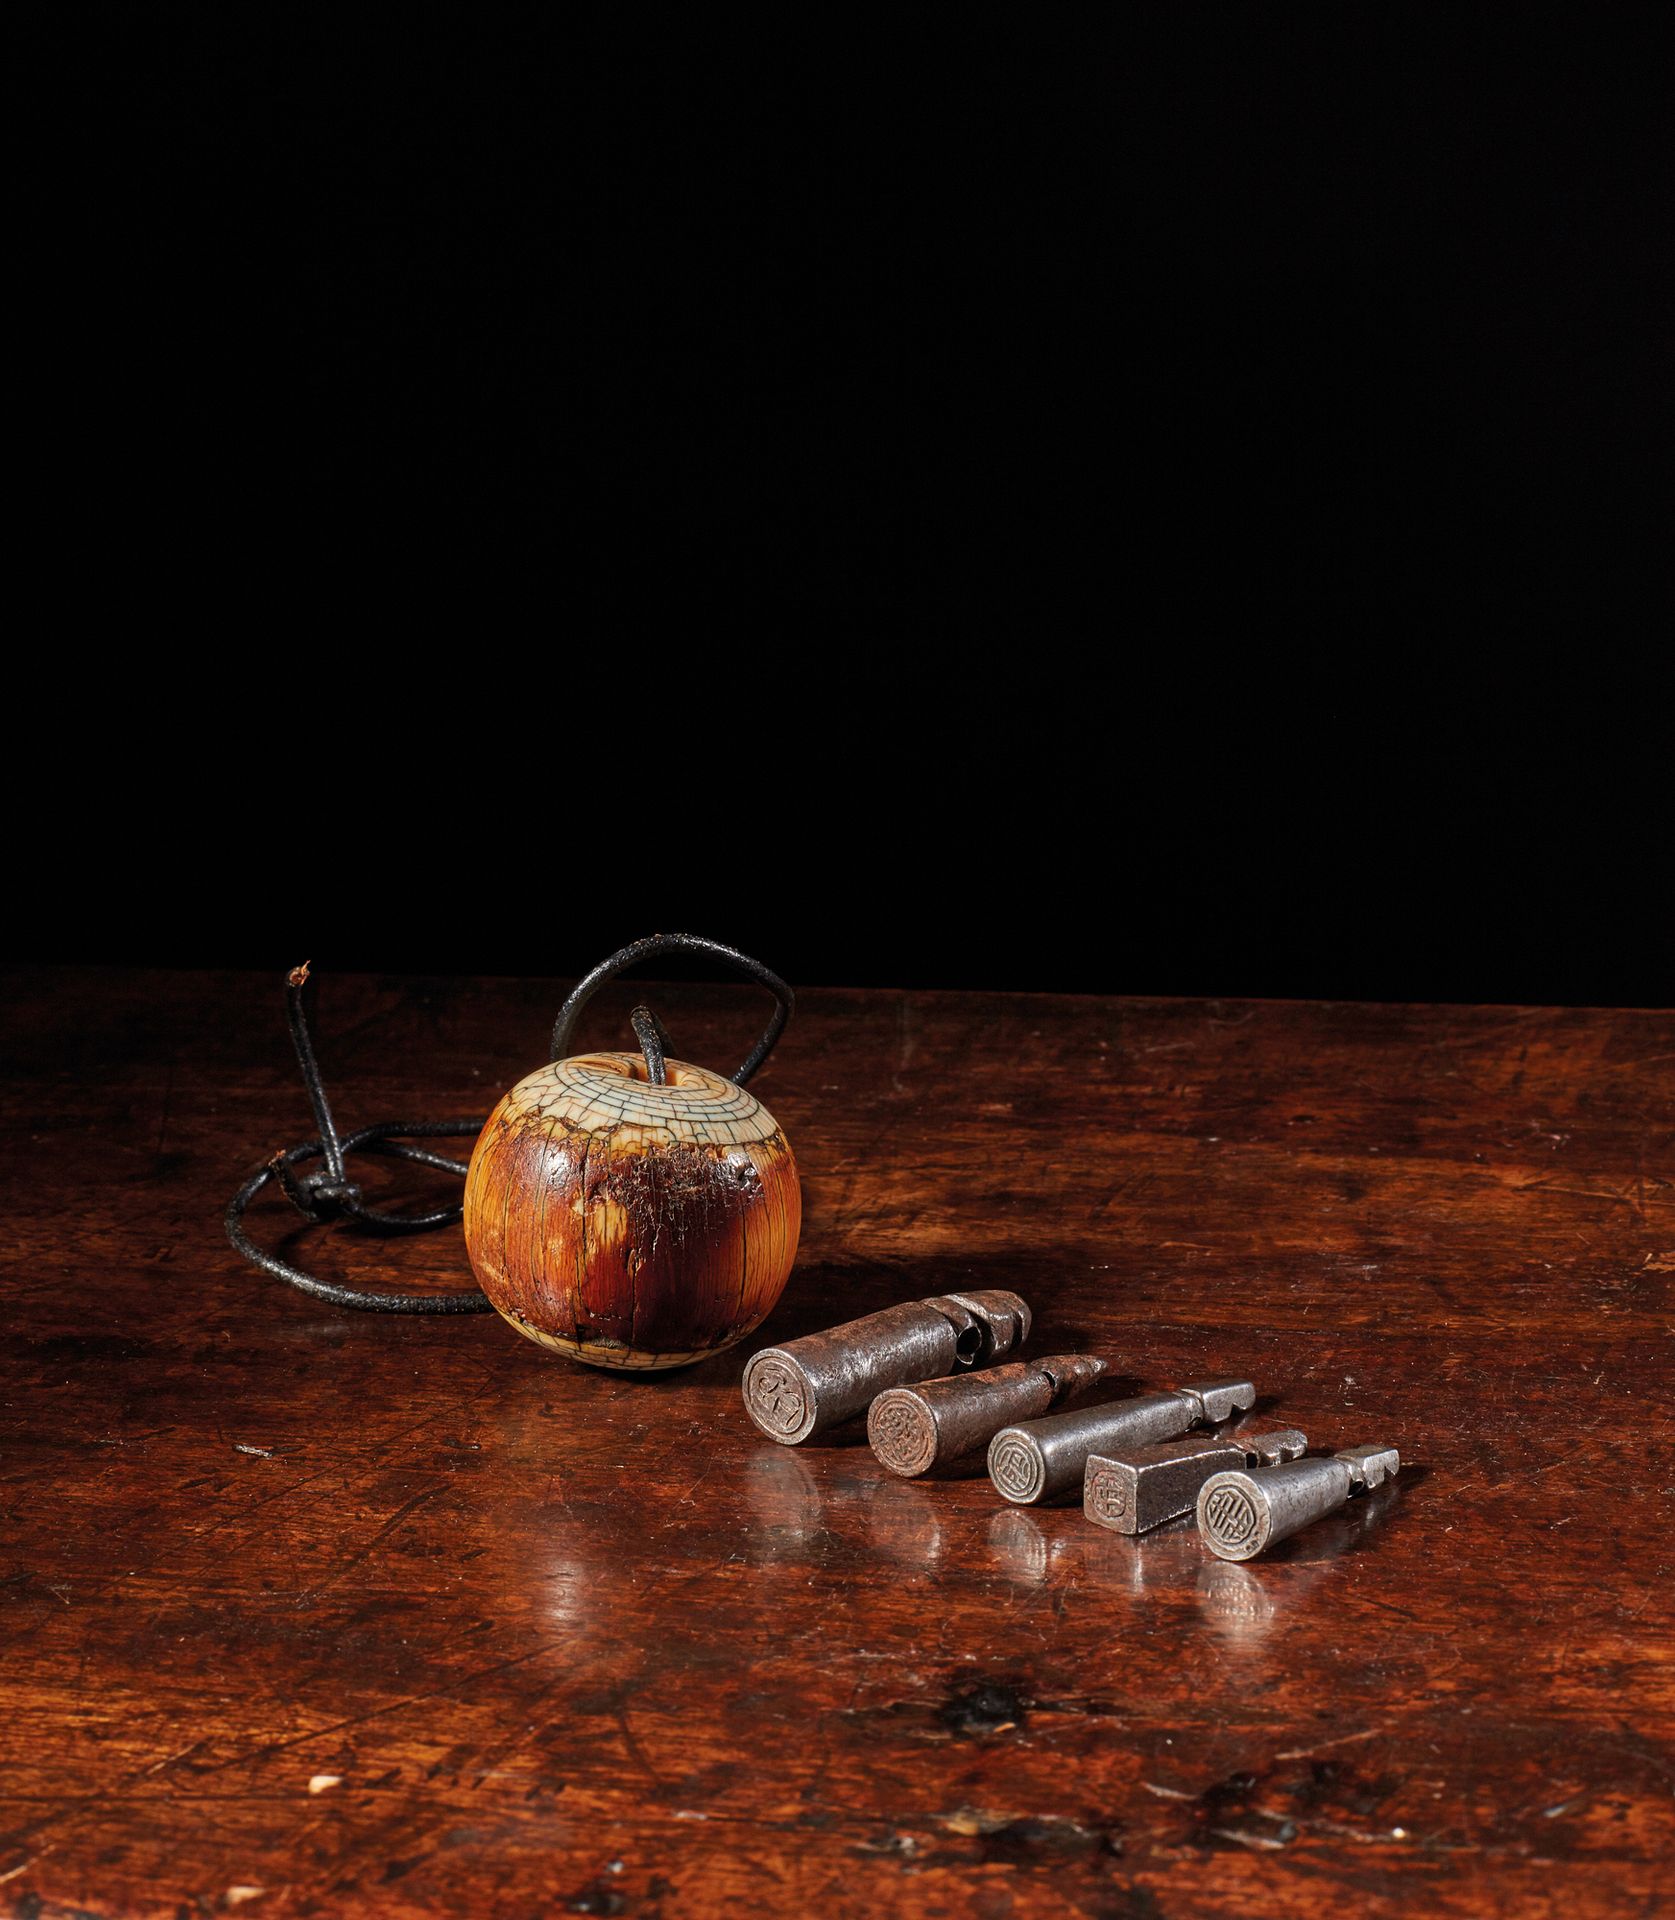 TIBET - XIXe siècle 一套五个小铁印和一个大骨珠。
高约4.5厘米 珠子直径4厘米